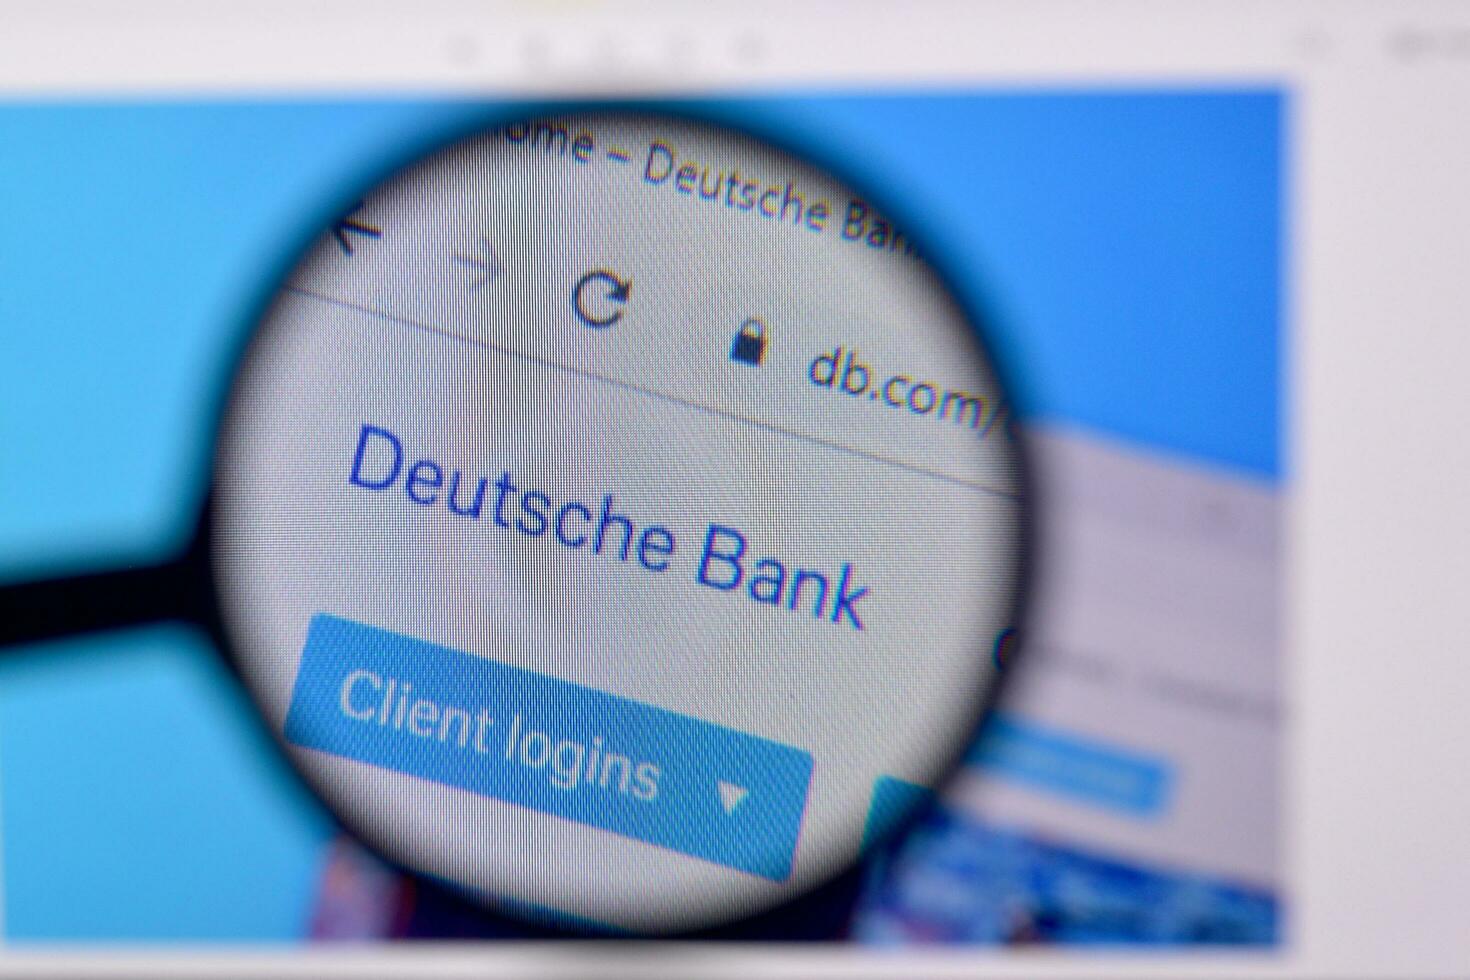 página principal de Deutsch banco sitio web en el monitor de ordenador personal, url - db.com. foto